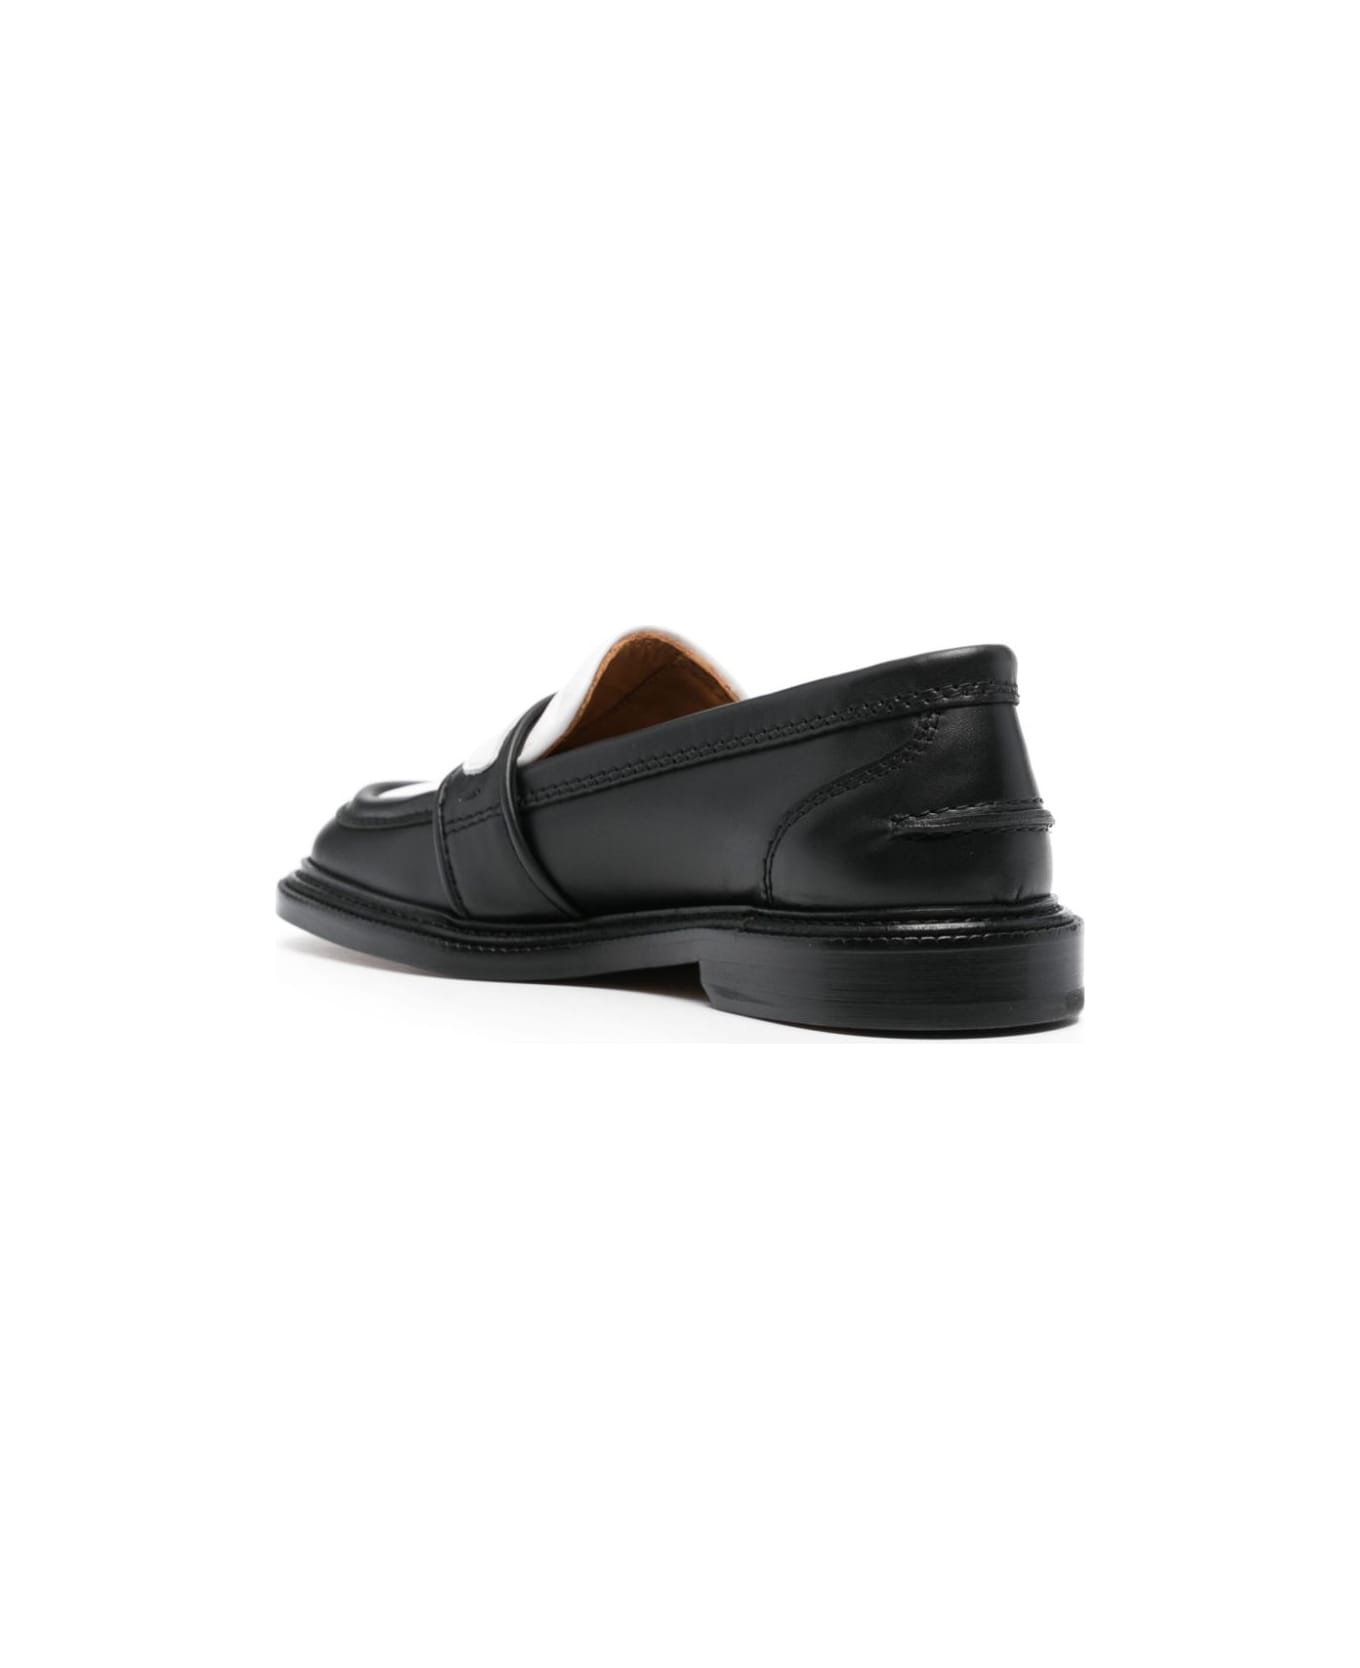 Maison Kitsuné Bicolor Leather Loafers - Black White